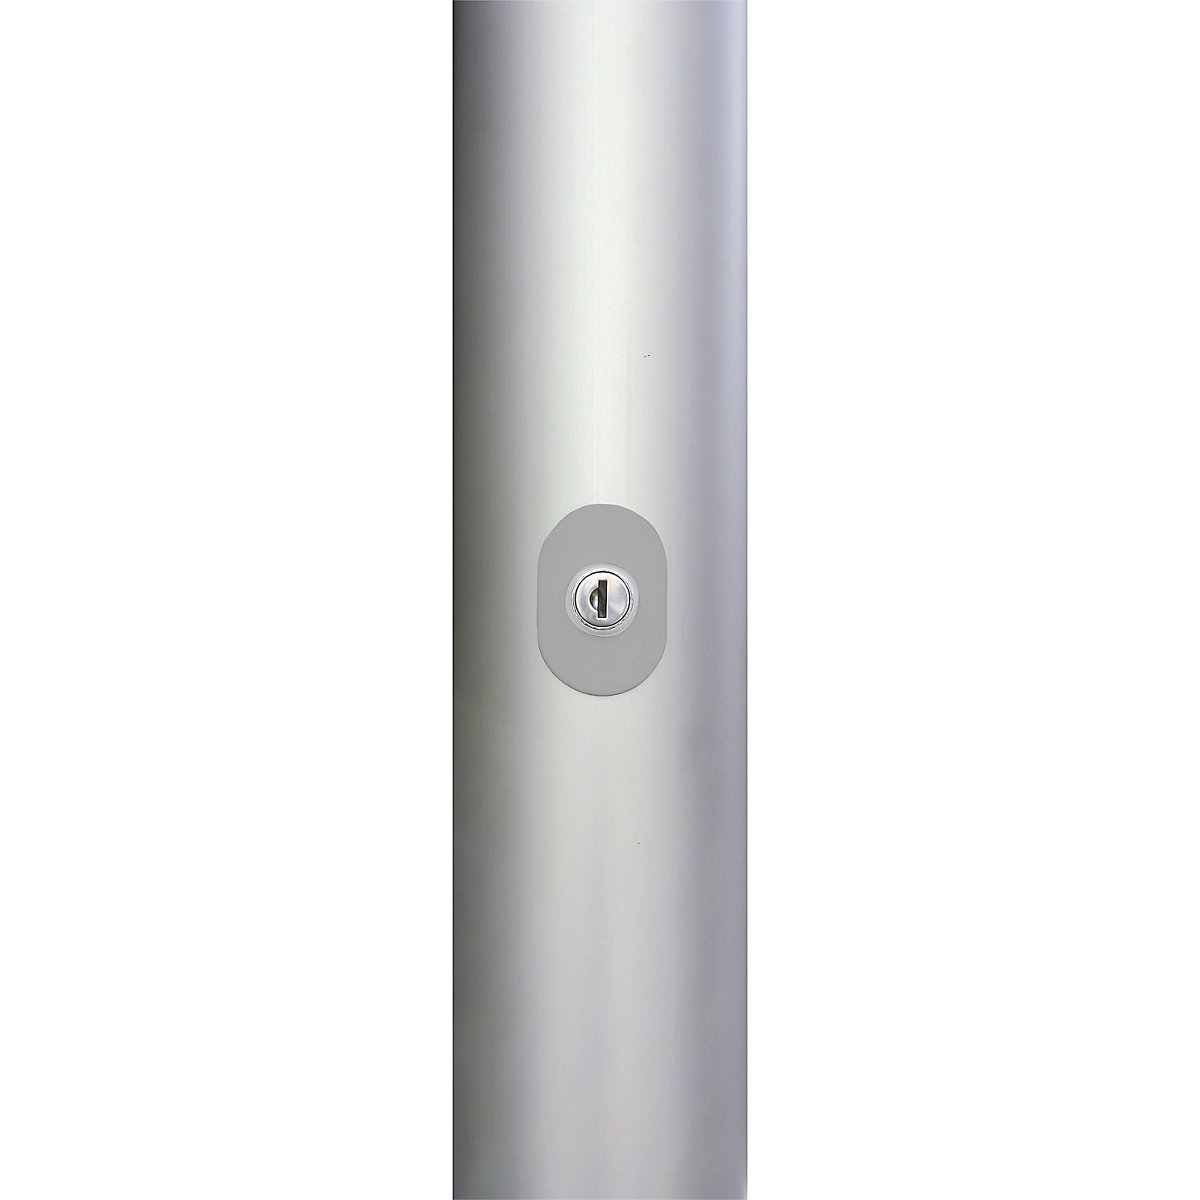 Mannus – PIRAT aluminium flag pole (Product illustration 7)